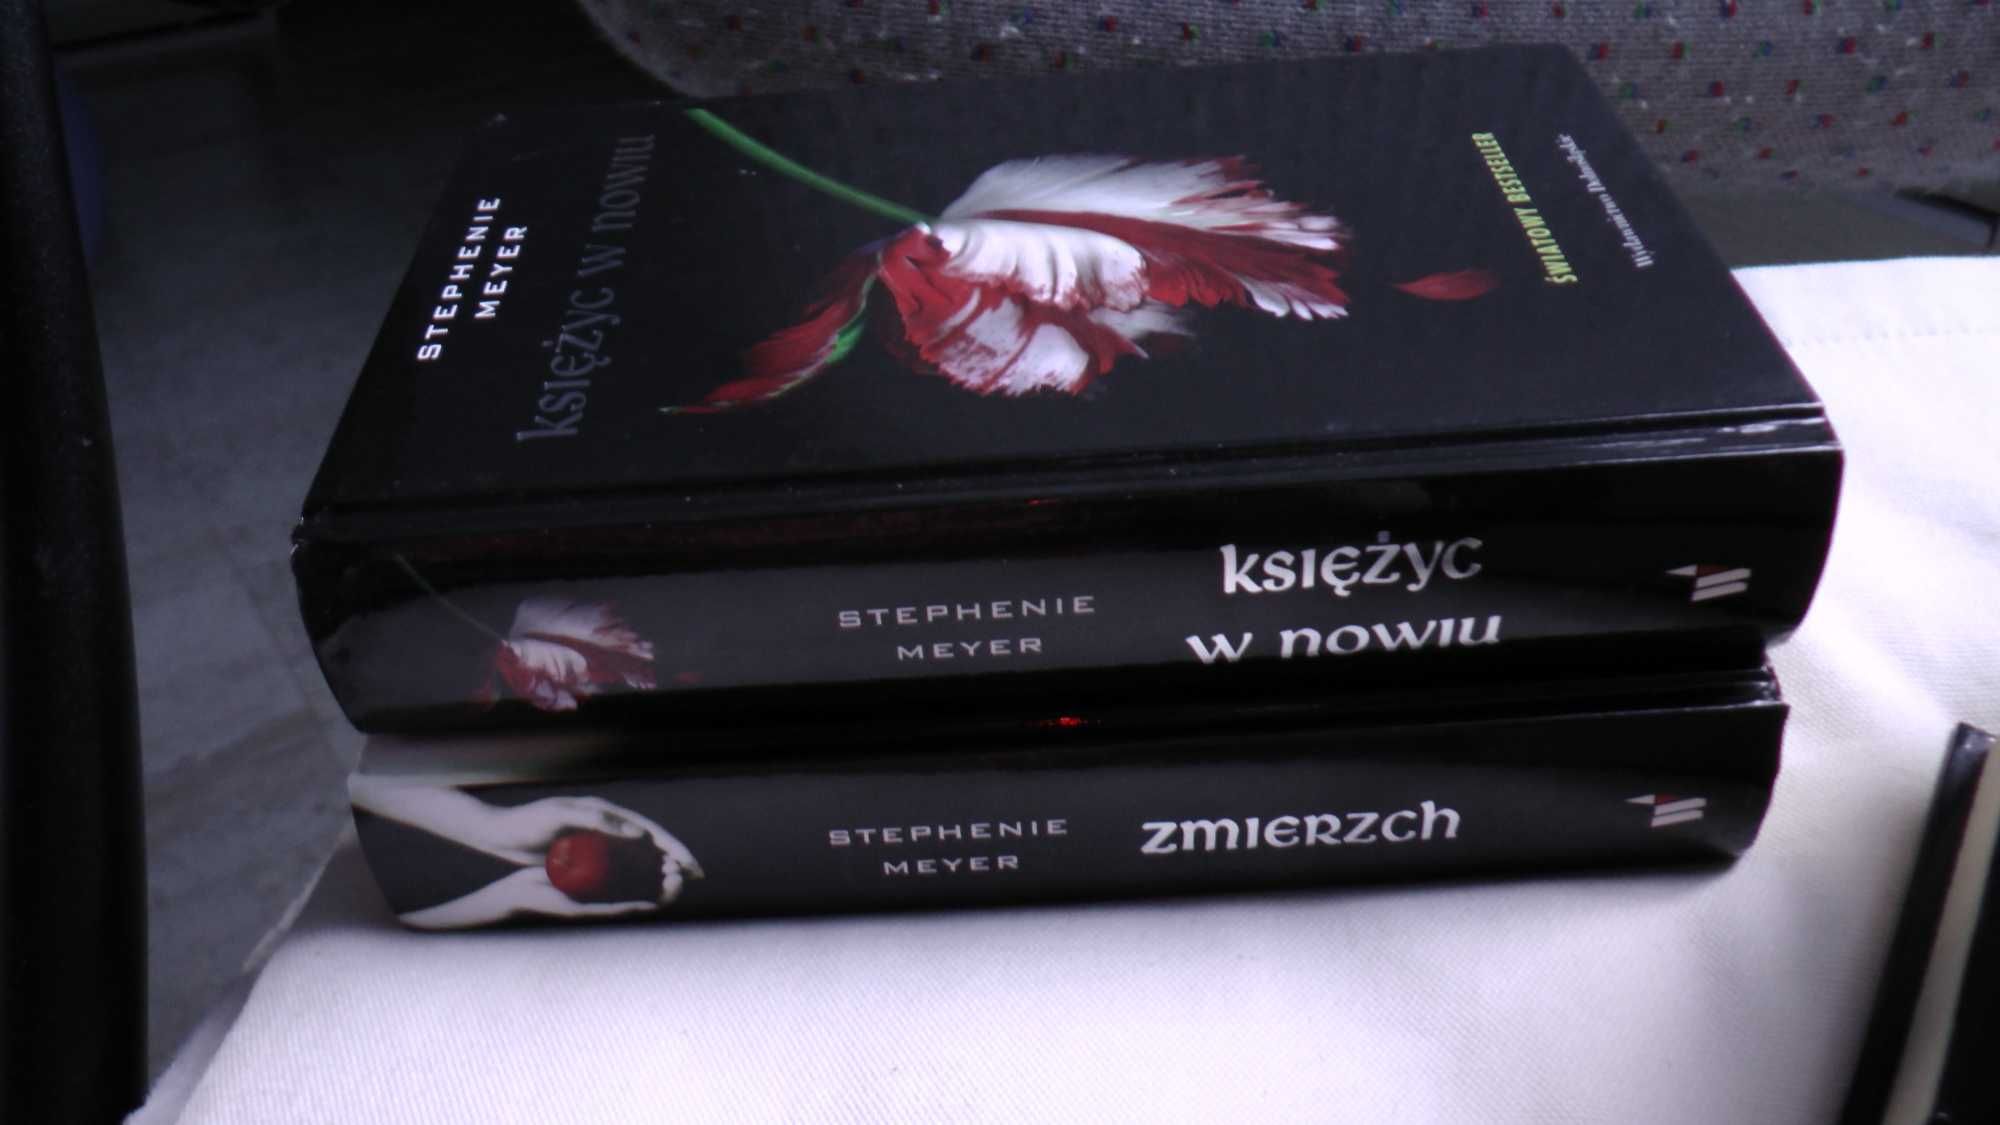 Zmierzch Saga Stephenie Meyer 4 tomy oprawa twarda